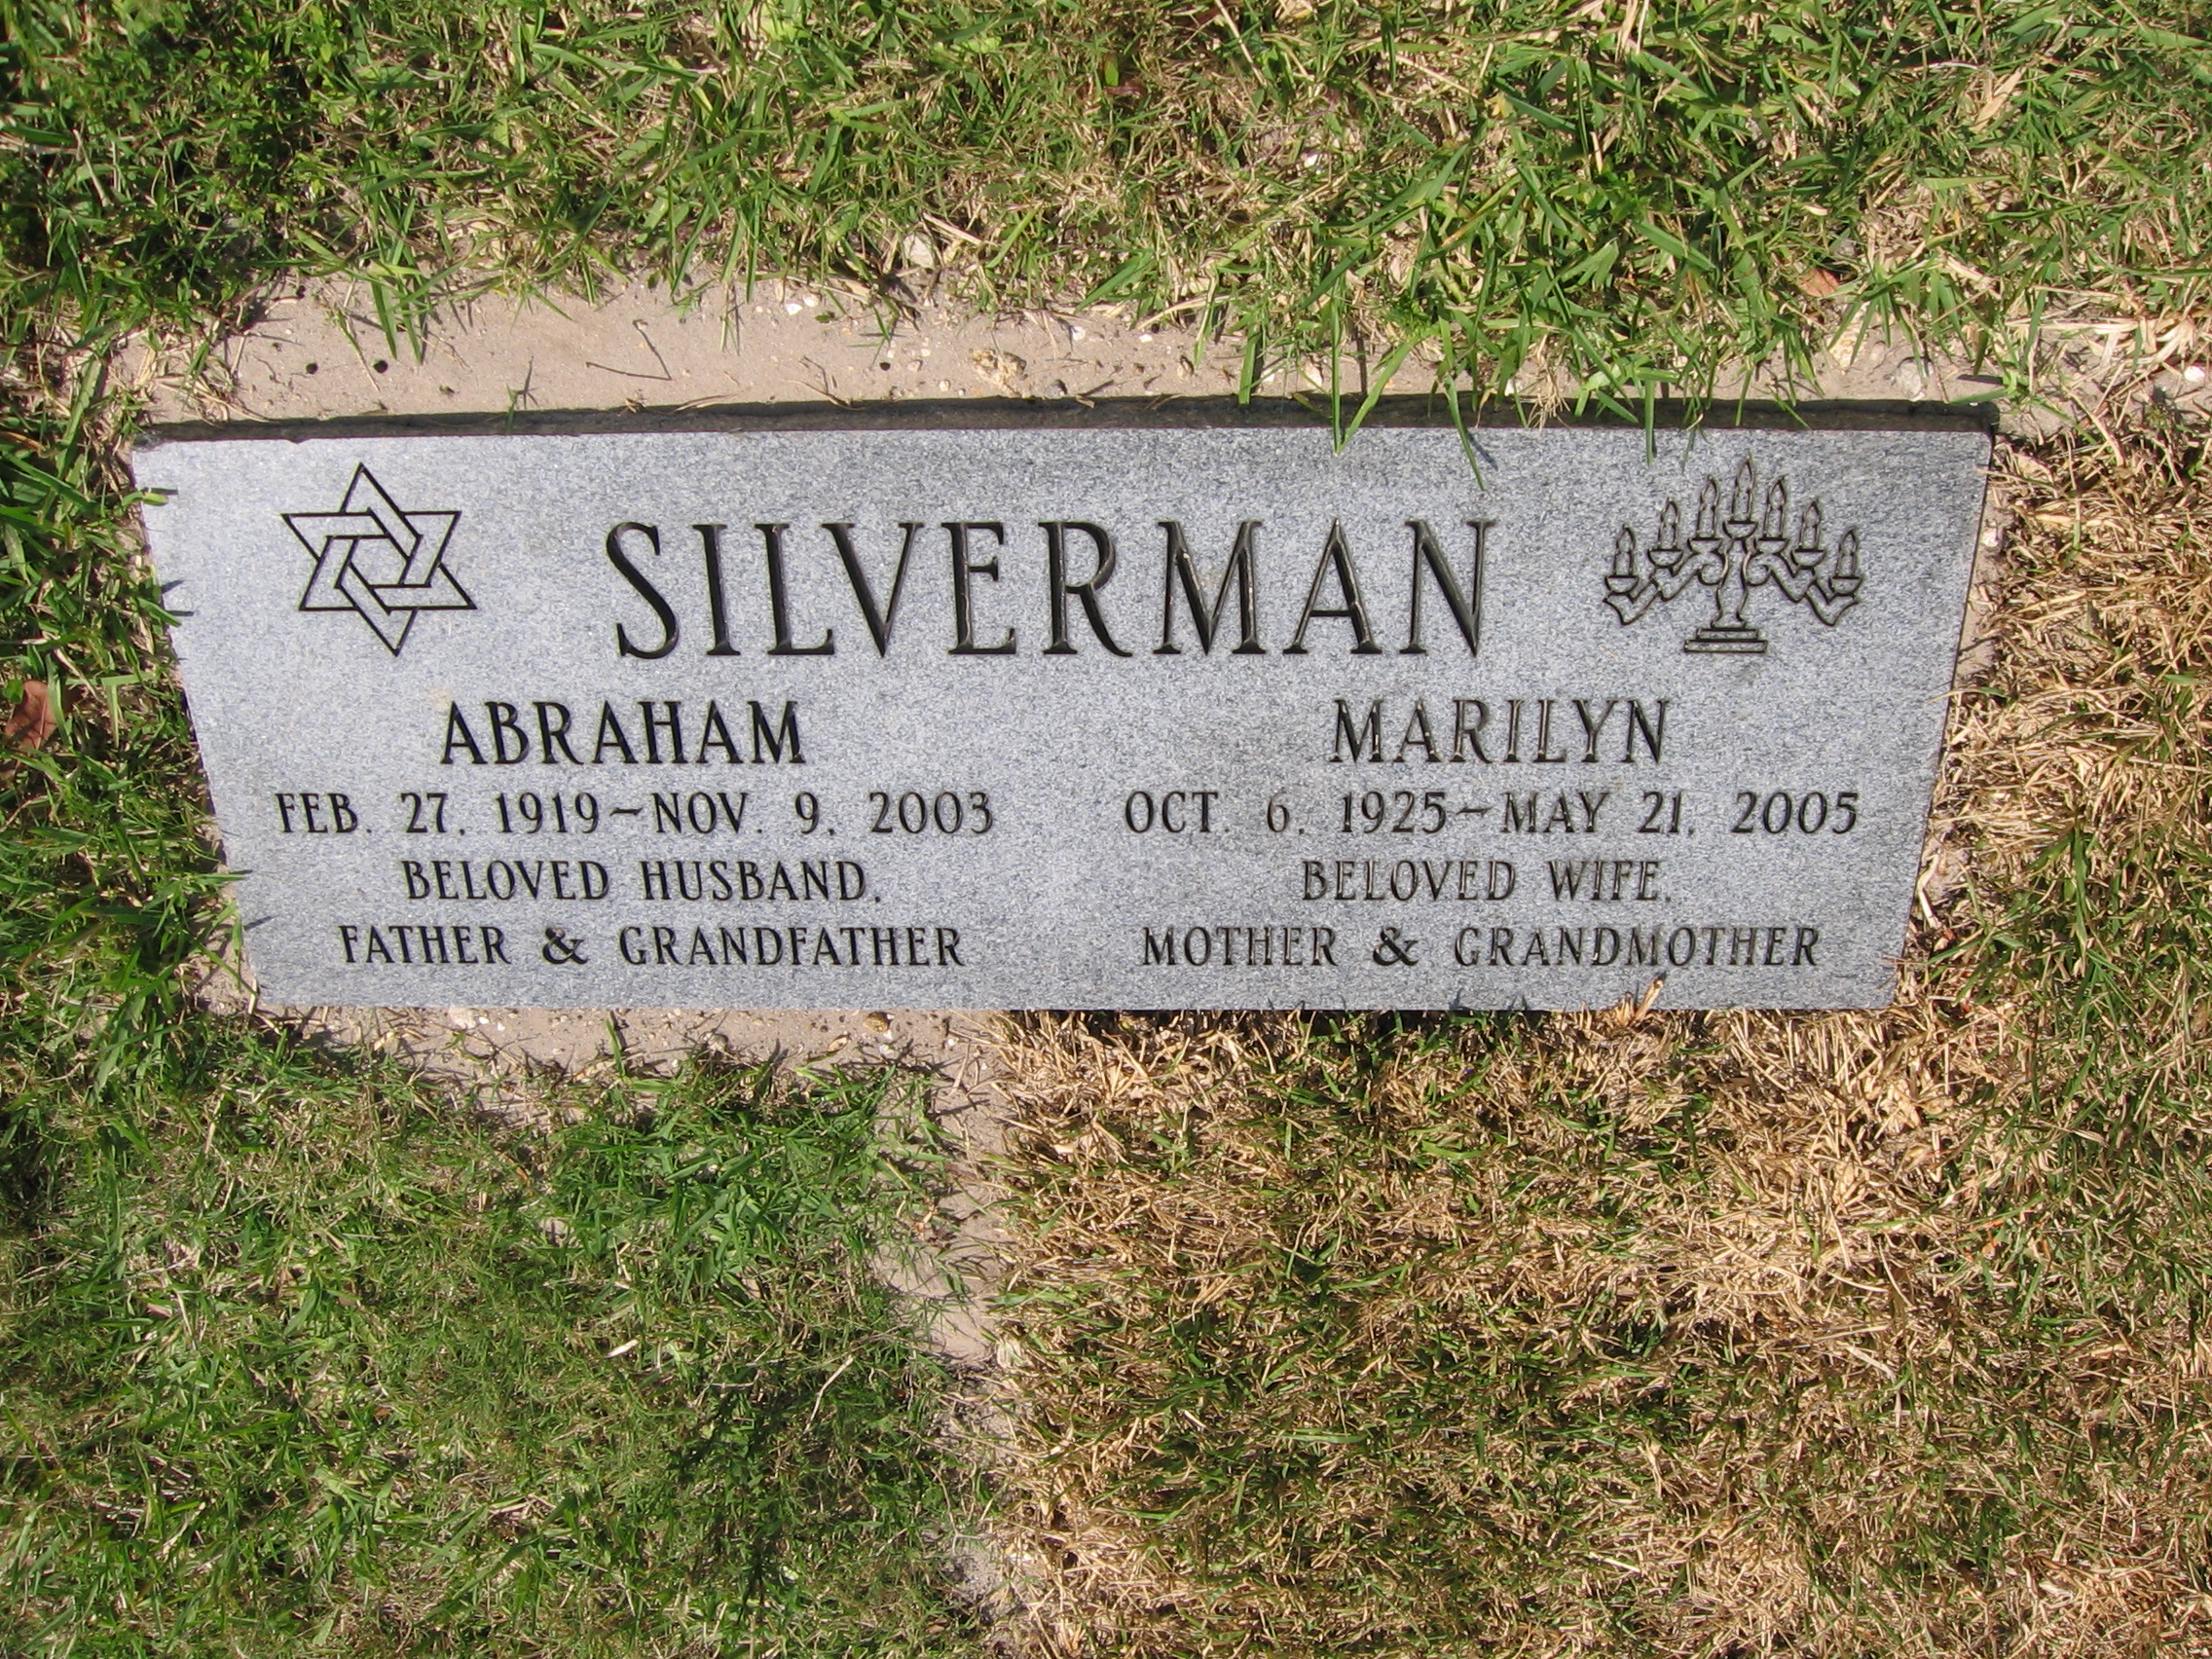 Abraham Silverman